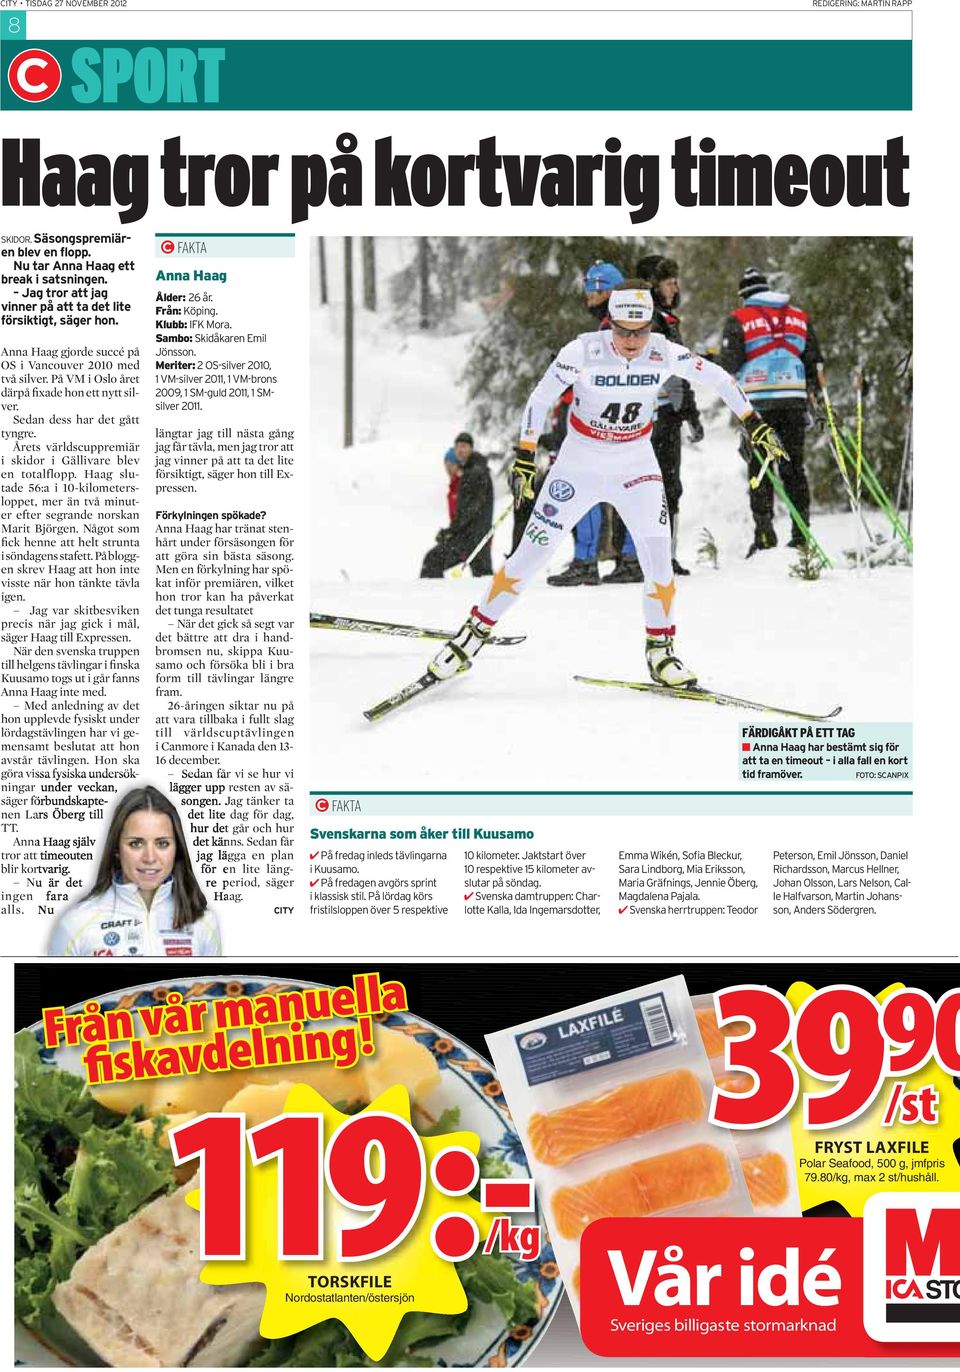 Sedan dess har det gått tyngre. Årets världscuppremiär i skidor i Gällivare blev en totalflopp. Haag slutade 56:a i 10-kilometersloppet, mer än två minuter efter segrande norskan Marit Björgen.